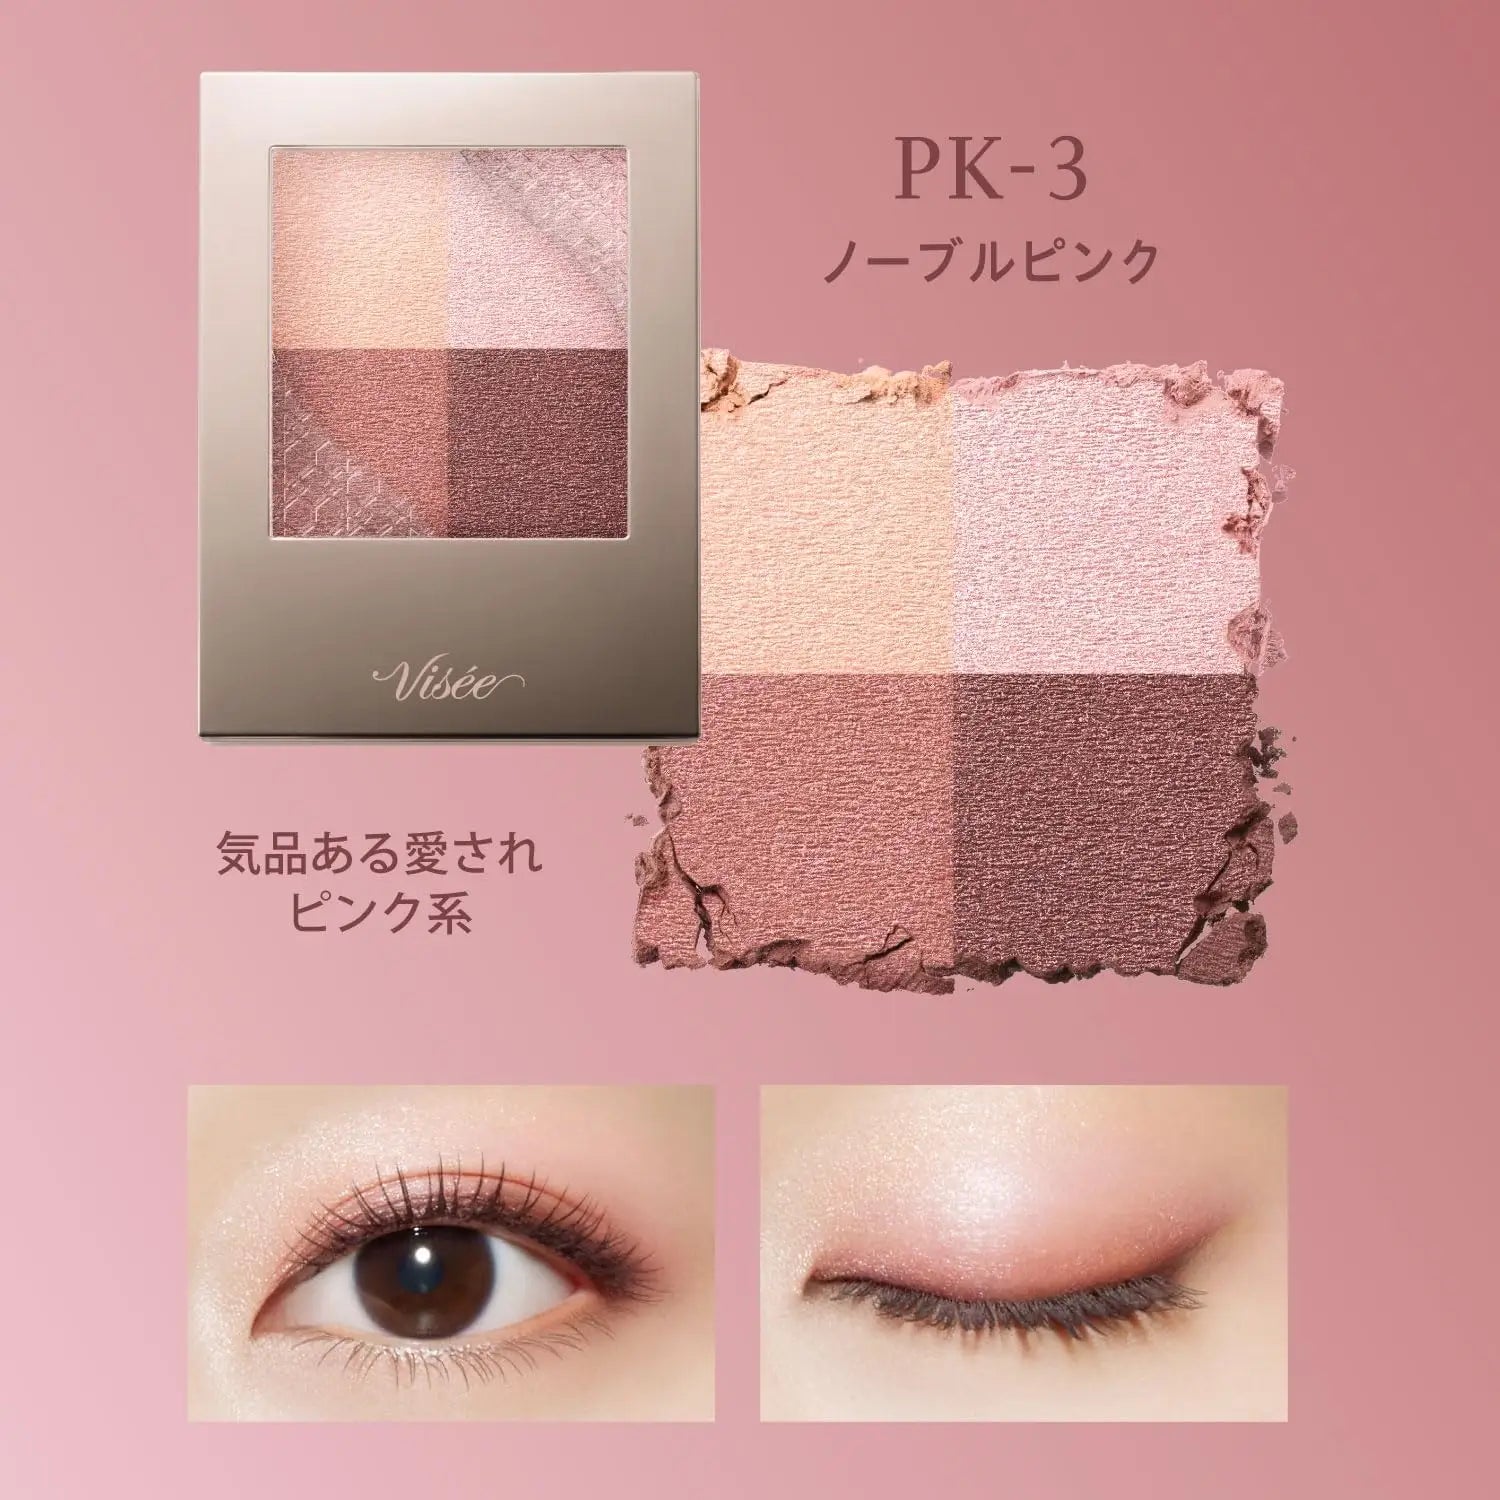 Kose Visee Nuance Dewy Creator (PK-3 Noble Pink) 5g - Buy Me Japan